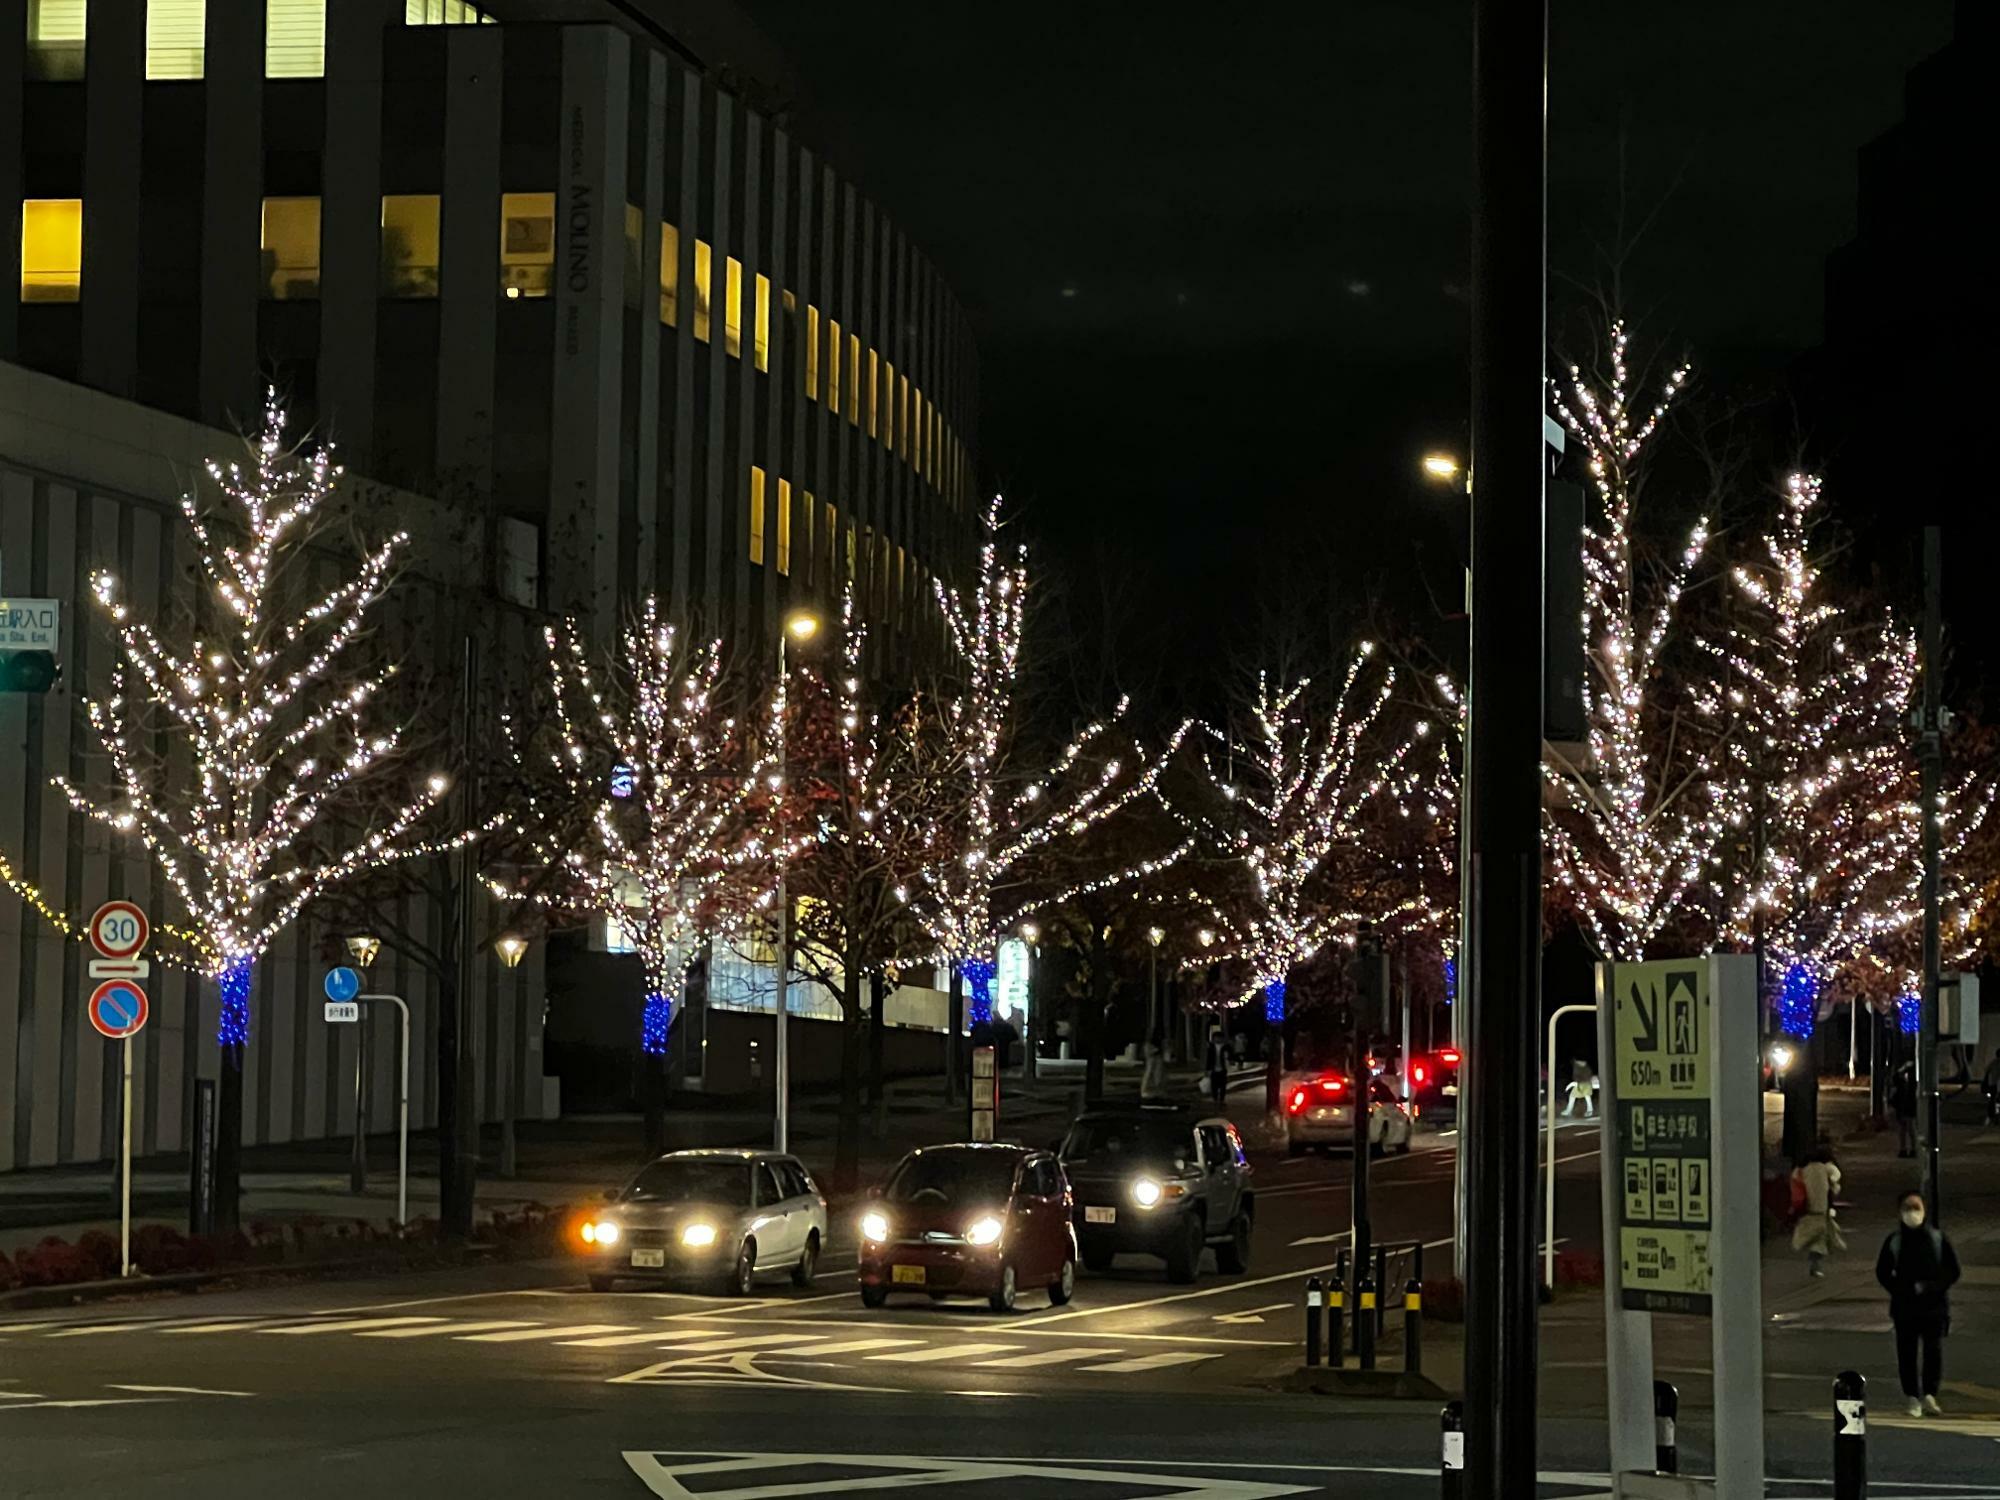 川崎市アートセンター前のカエデ並木も美しく点灯。車中から見ると光のトンネルをくぐっているような雰囲気が楽しめます。